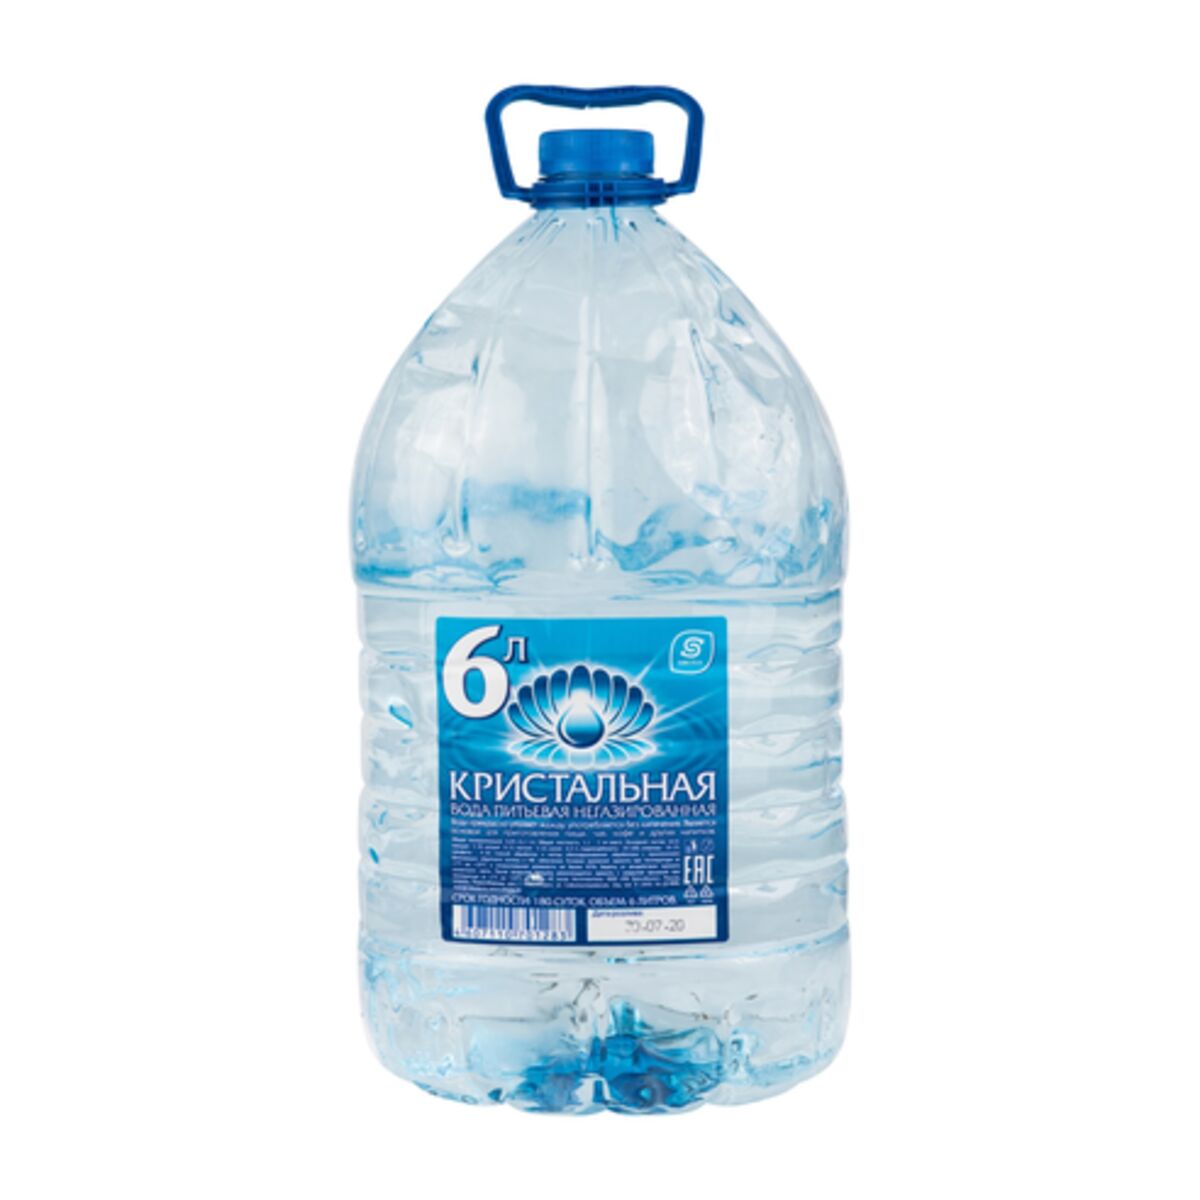 Телефон воды кристальная. Кристальная Долина», ГАЗ, 1.5Л. Питьевая вода. Кристальная вода. Вода питьевая Кристальный источник.